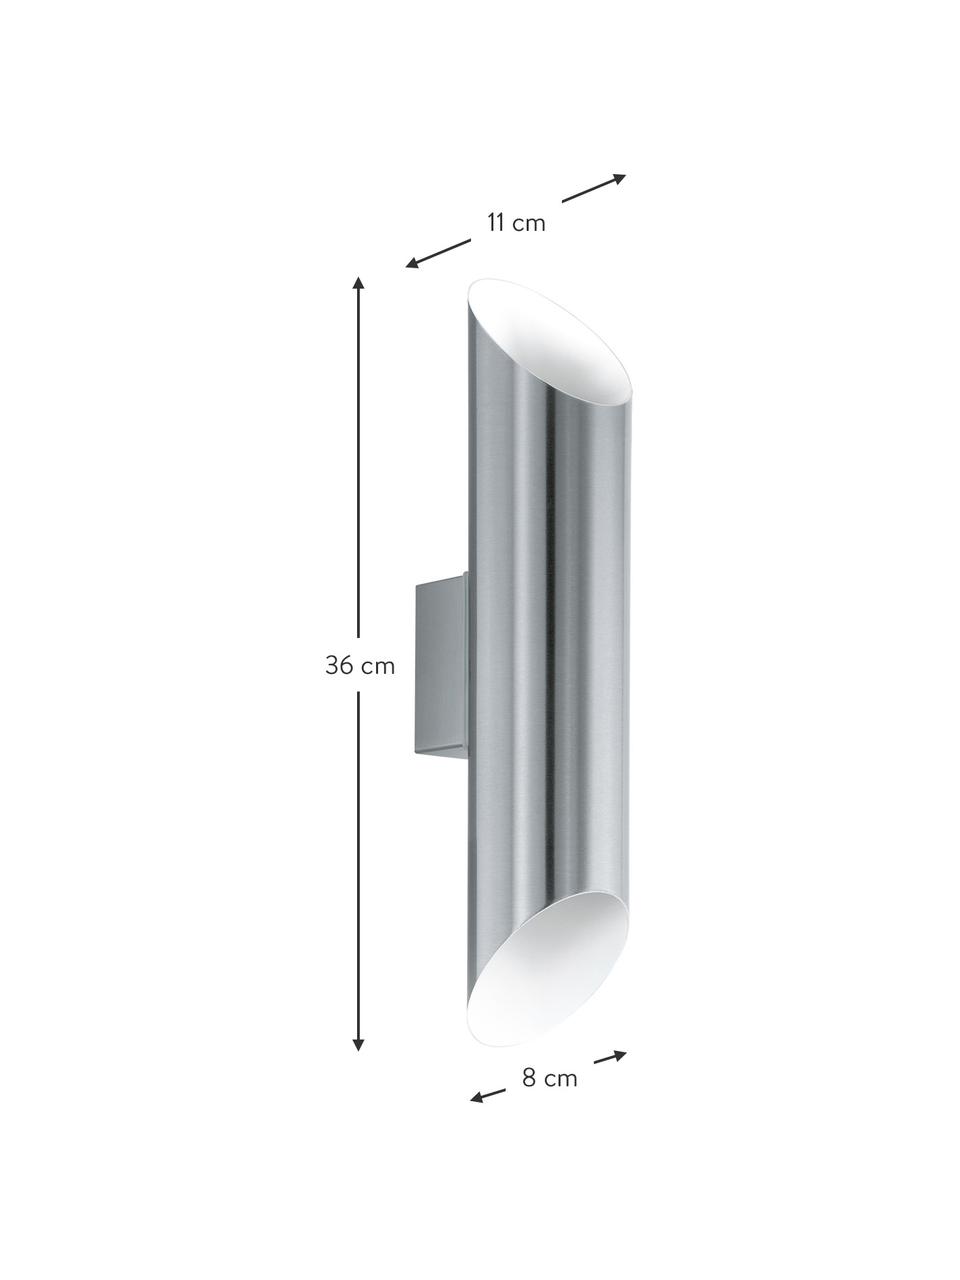 Outdoor wandlamp Agolada in zilverkleur, Lampenkap: edelstaal, gepoedercoat, Buitenzijde: edelstaal binnenzijde: wit, B 8 x H 36 cm